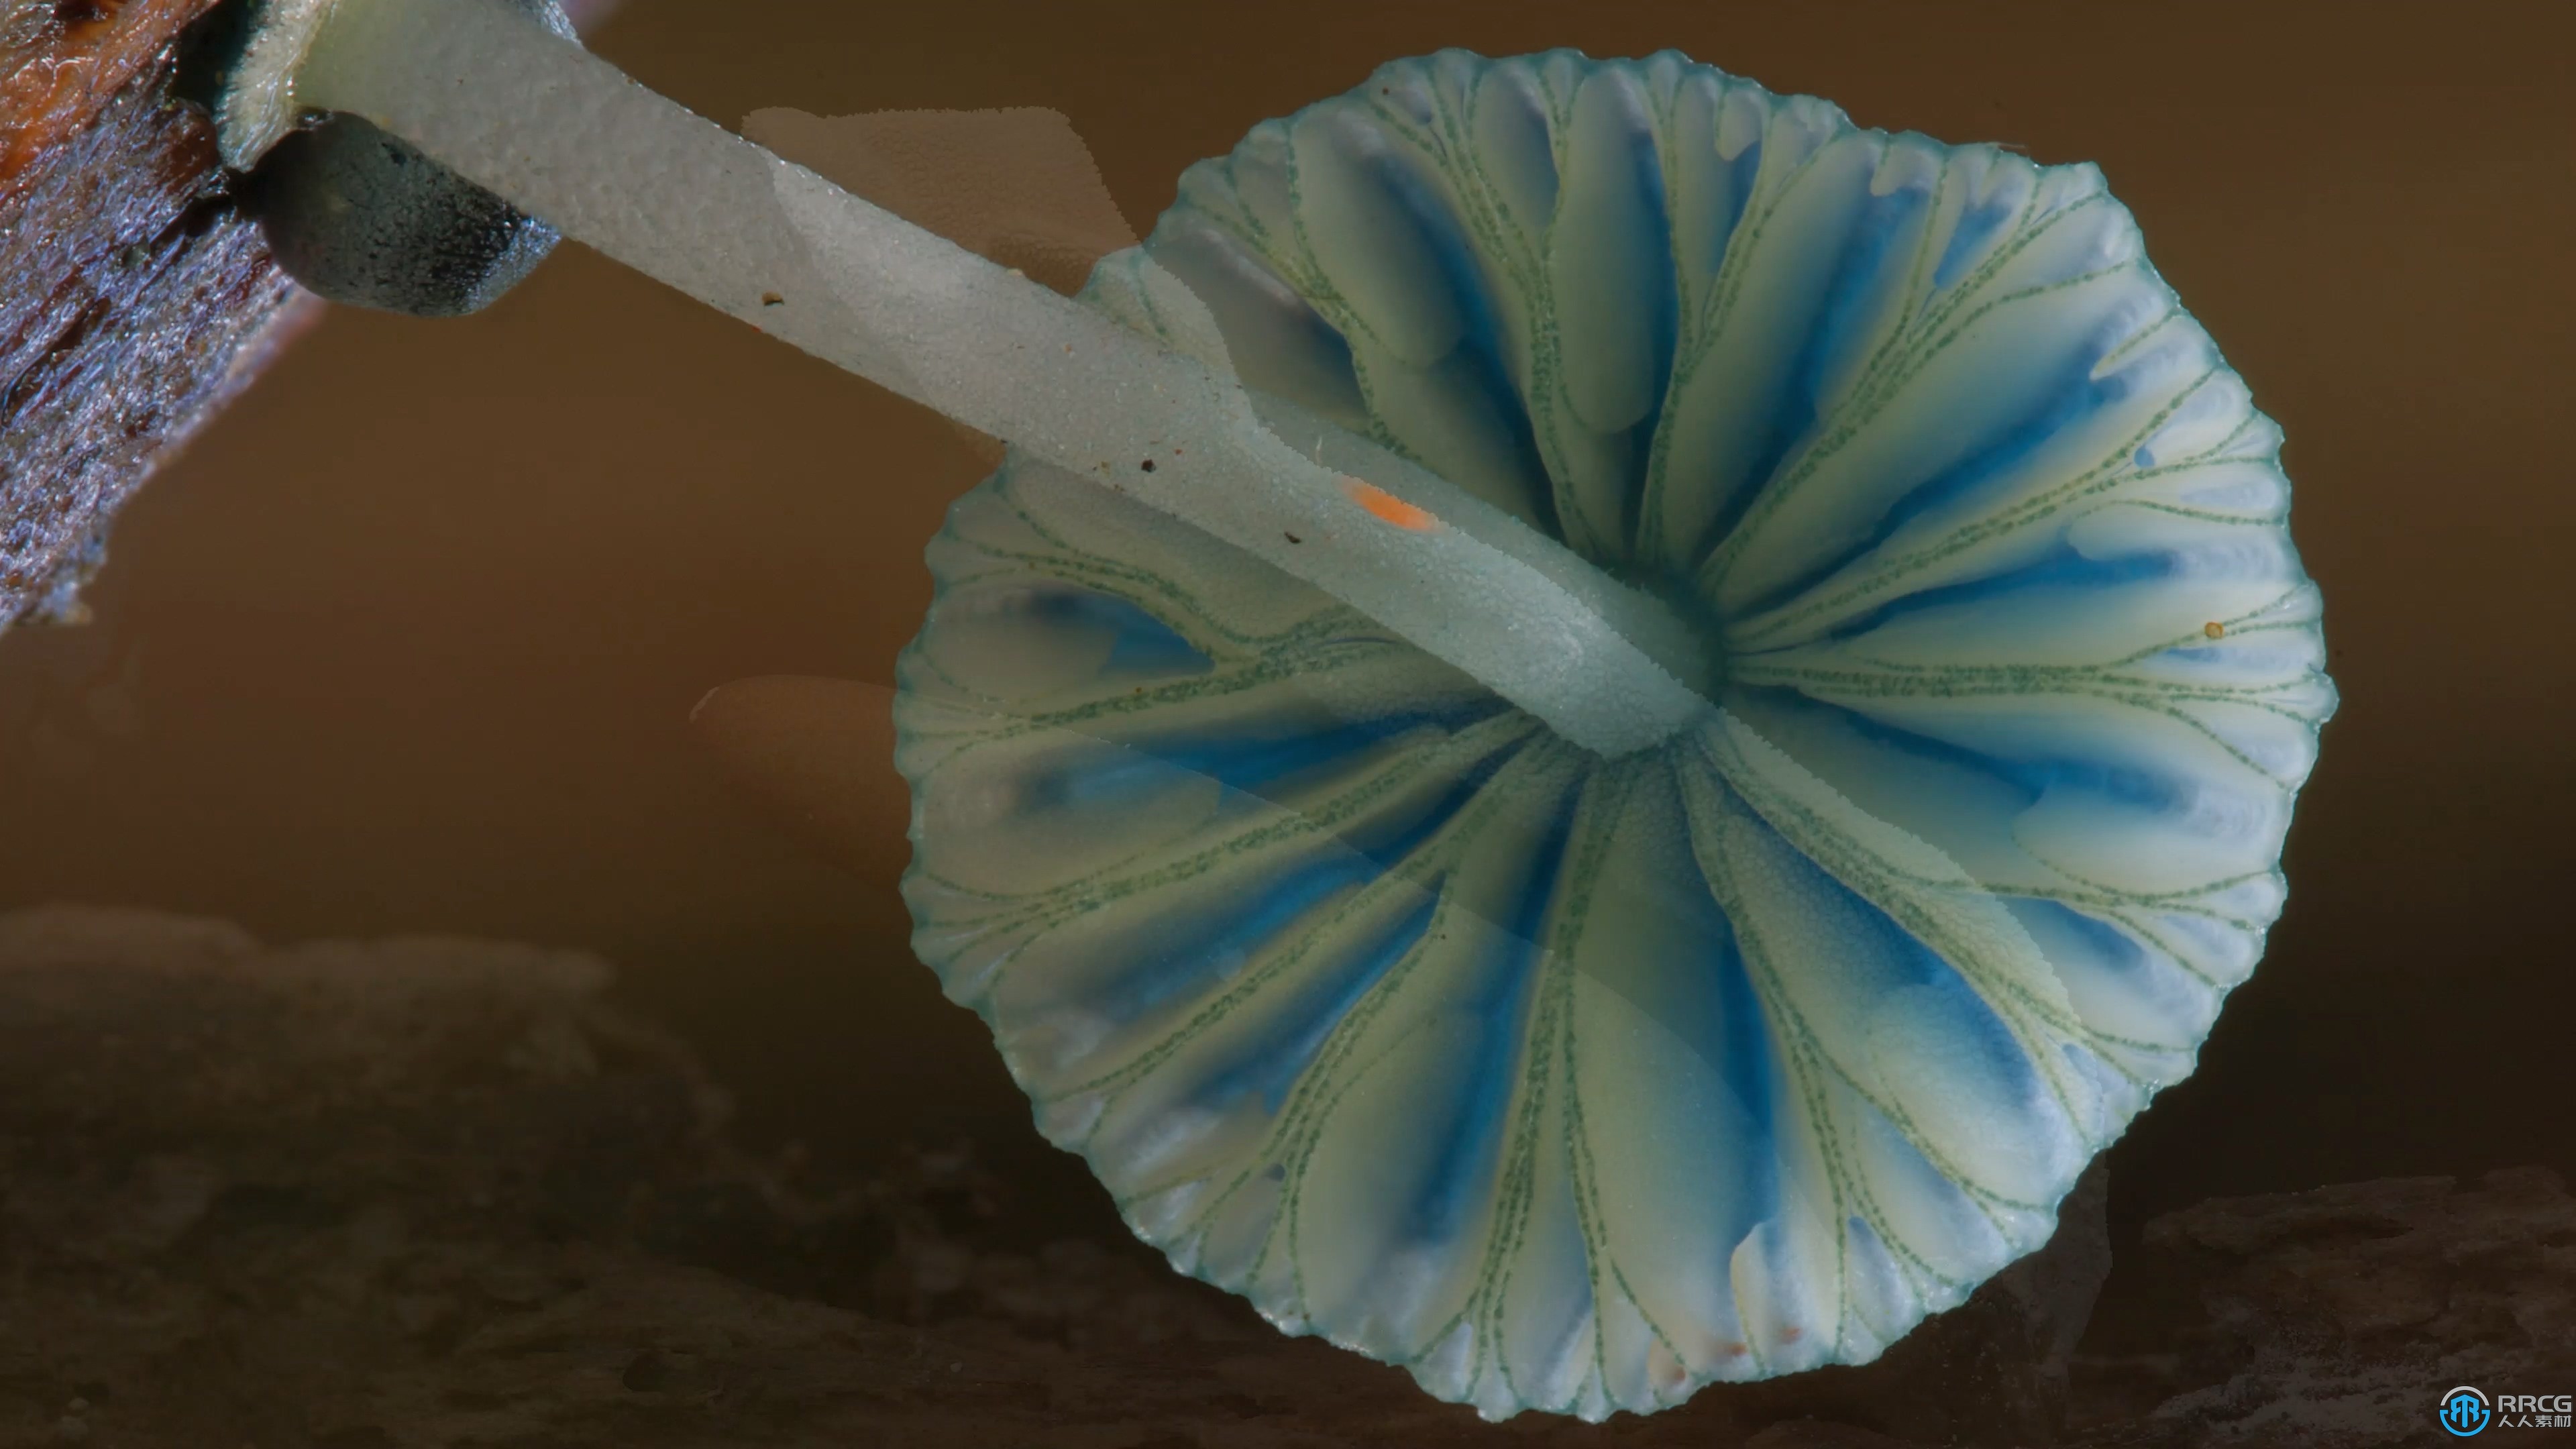 自然森林真菌蘑菇摄影技术大师班视频教程